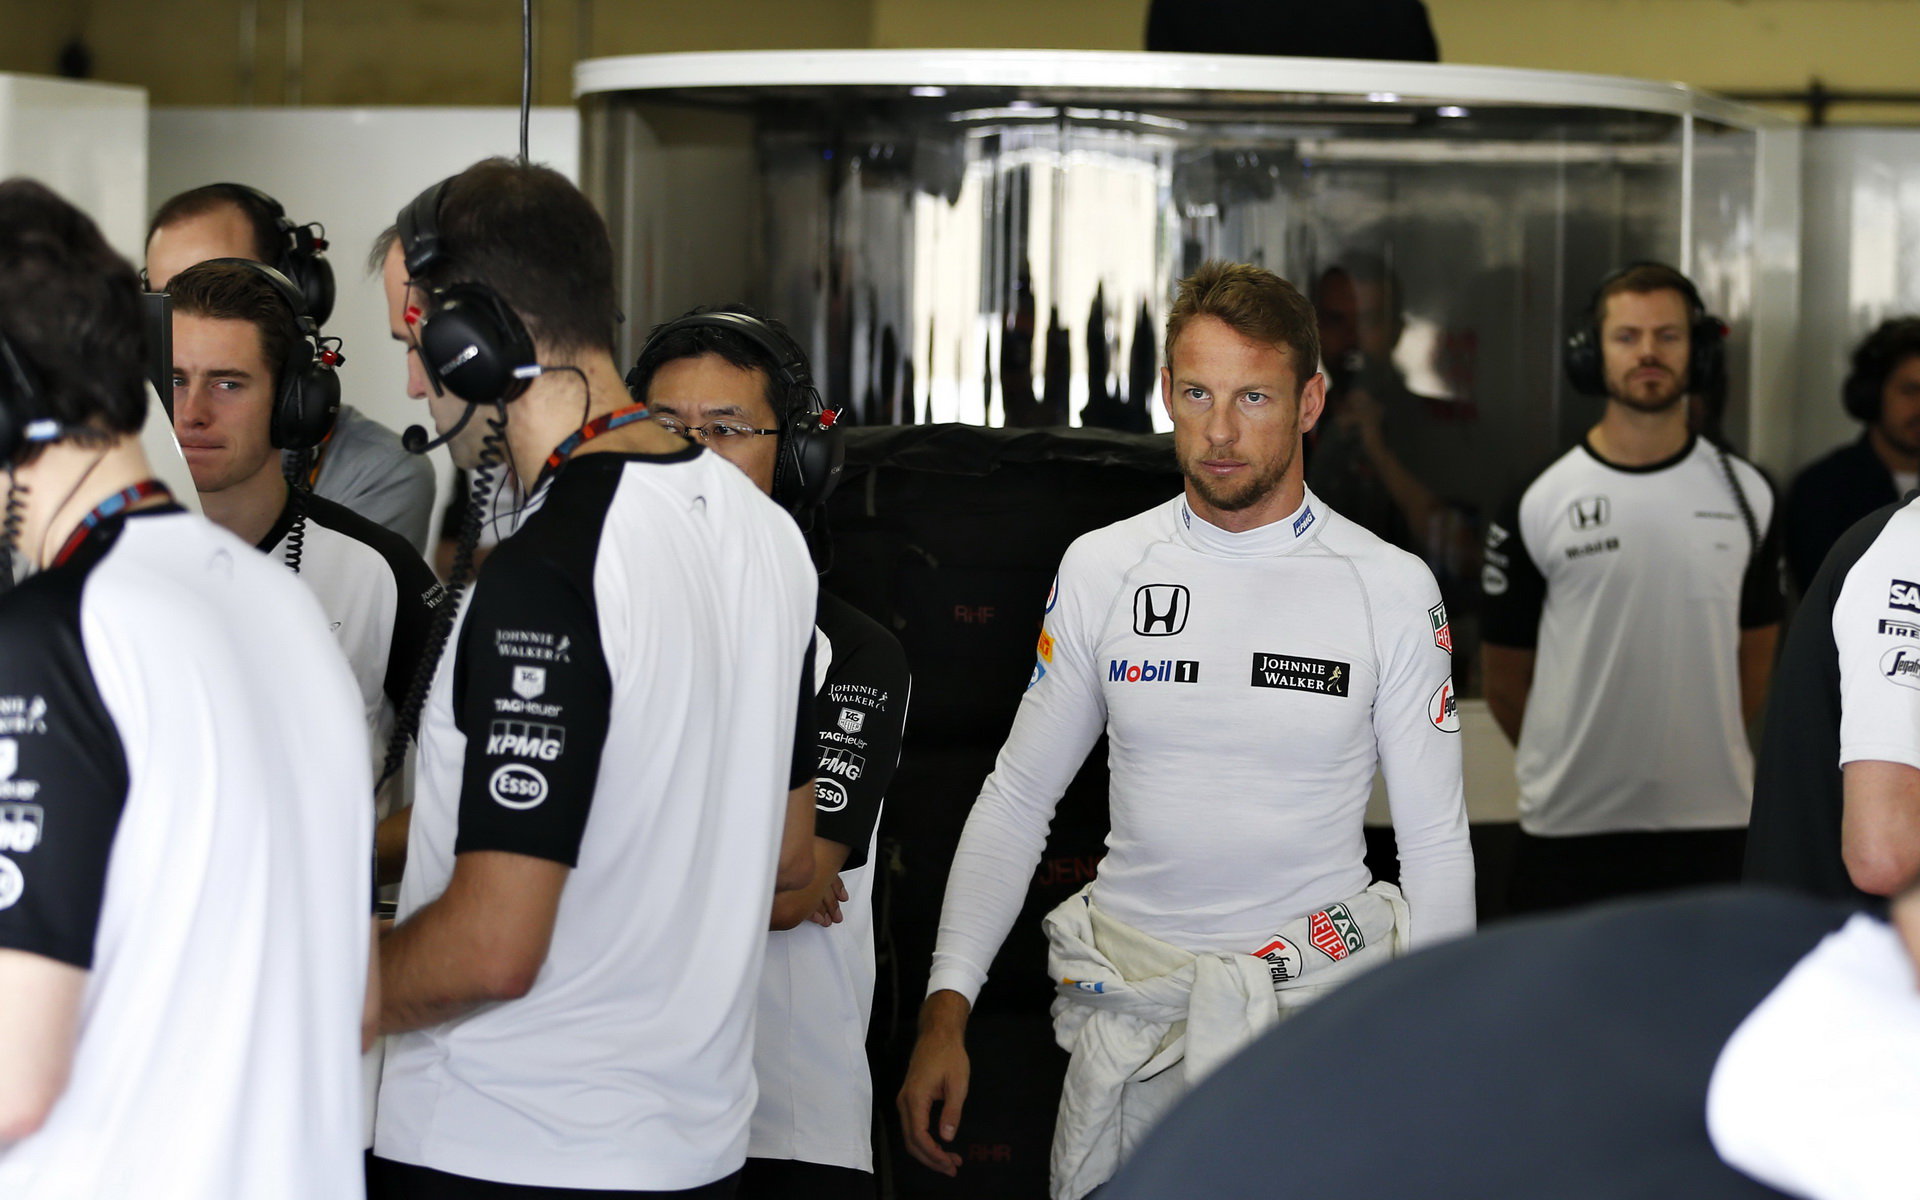 Jenson Button v Brazílii